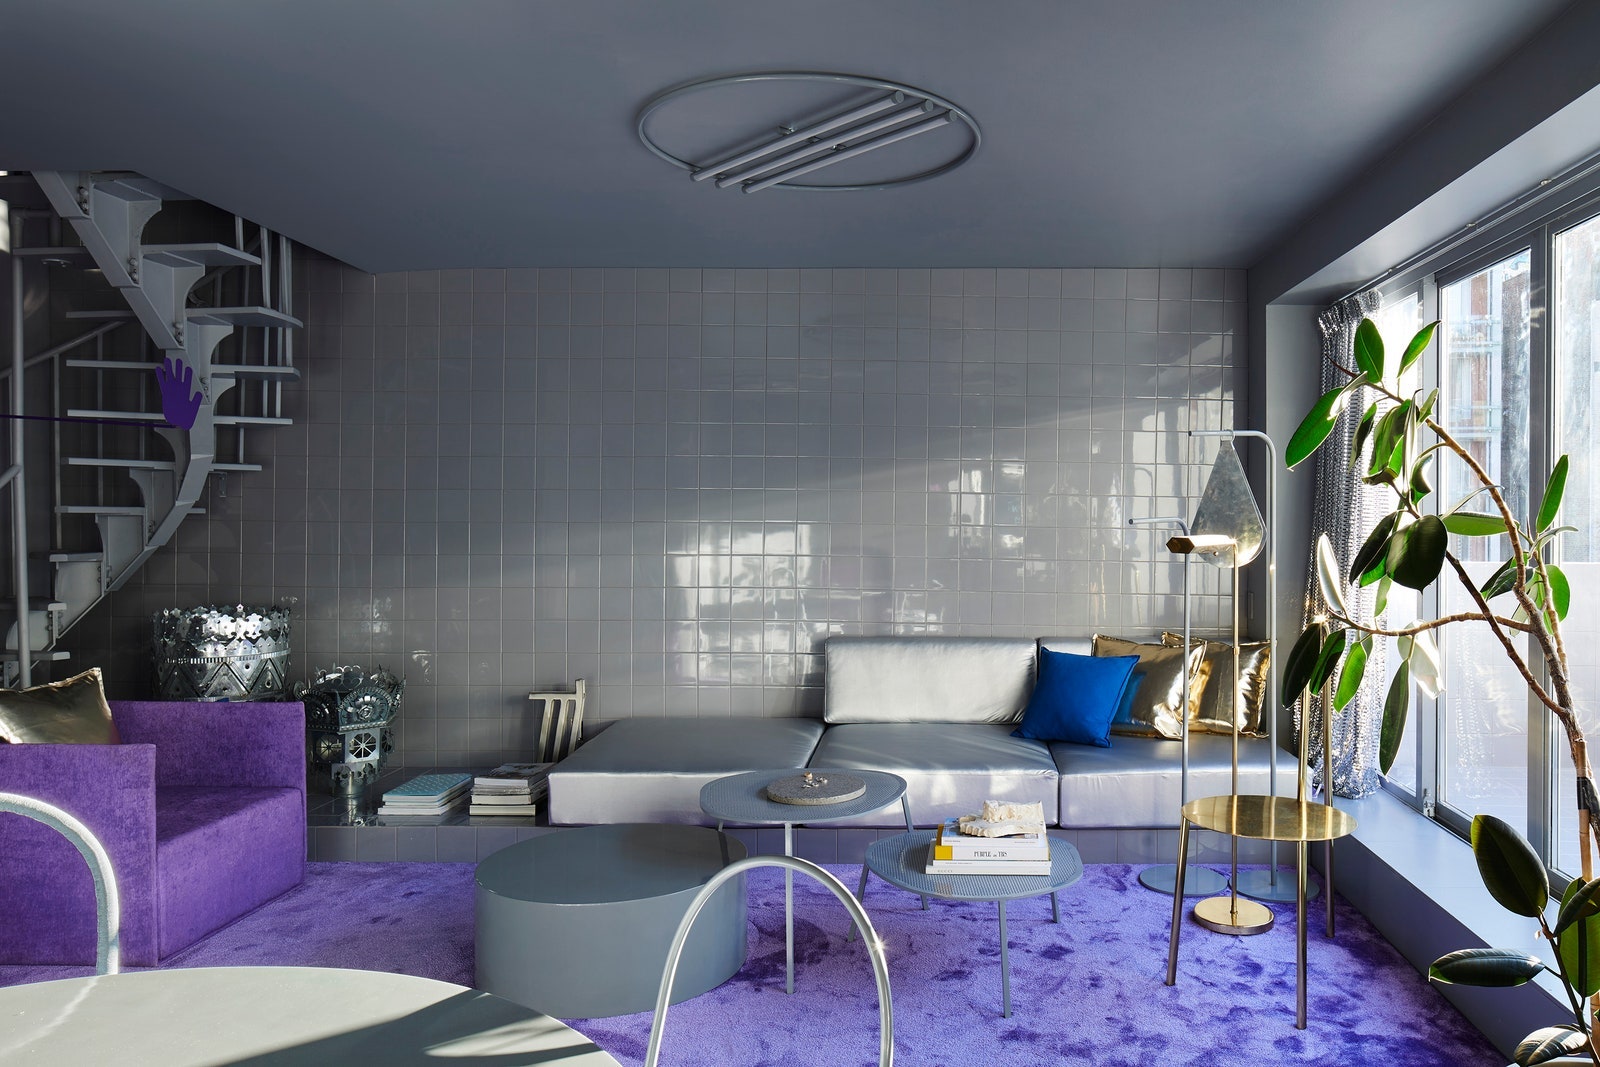 Двухуровневая квартира в пурпурных тонах дизайнера Гарри Нуриева. Фото Dylan Chandler